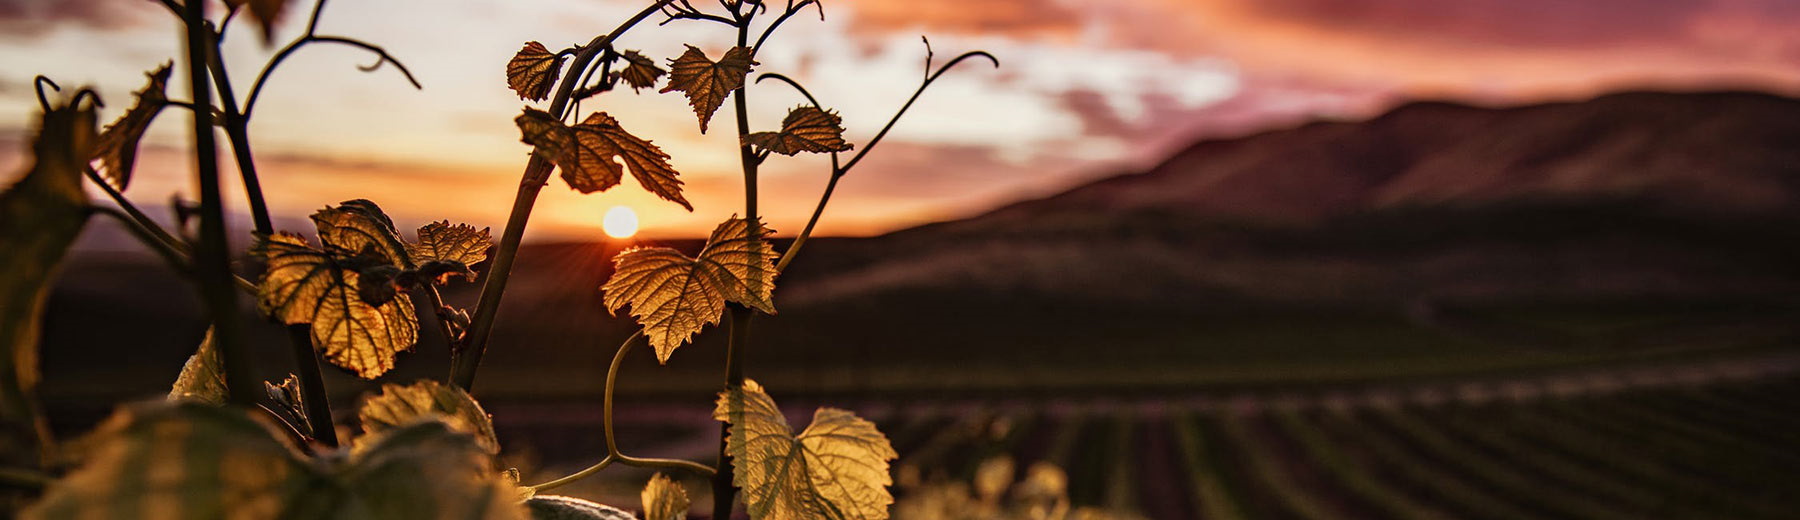 closeup vinyard at sunset